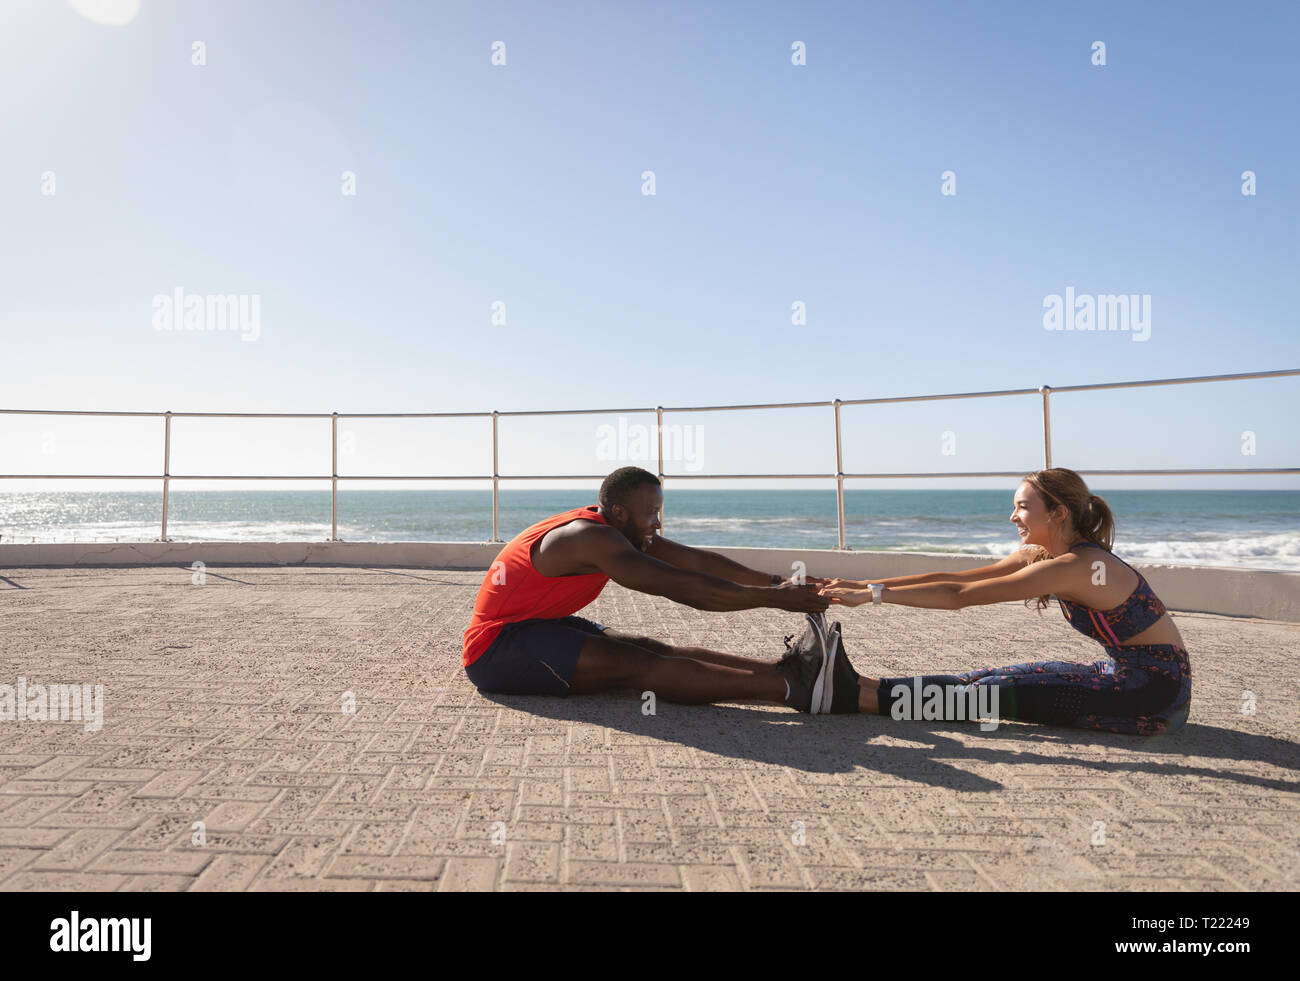 Paar tun stretching Übung auf den Bürgersteig in der Nähe von Promenade, Strand Stockfoto